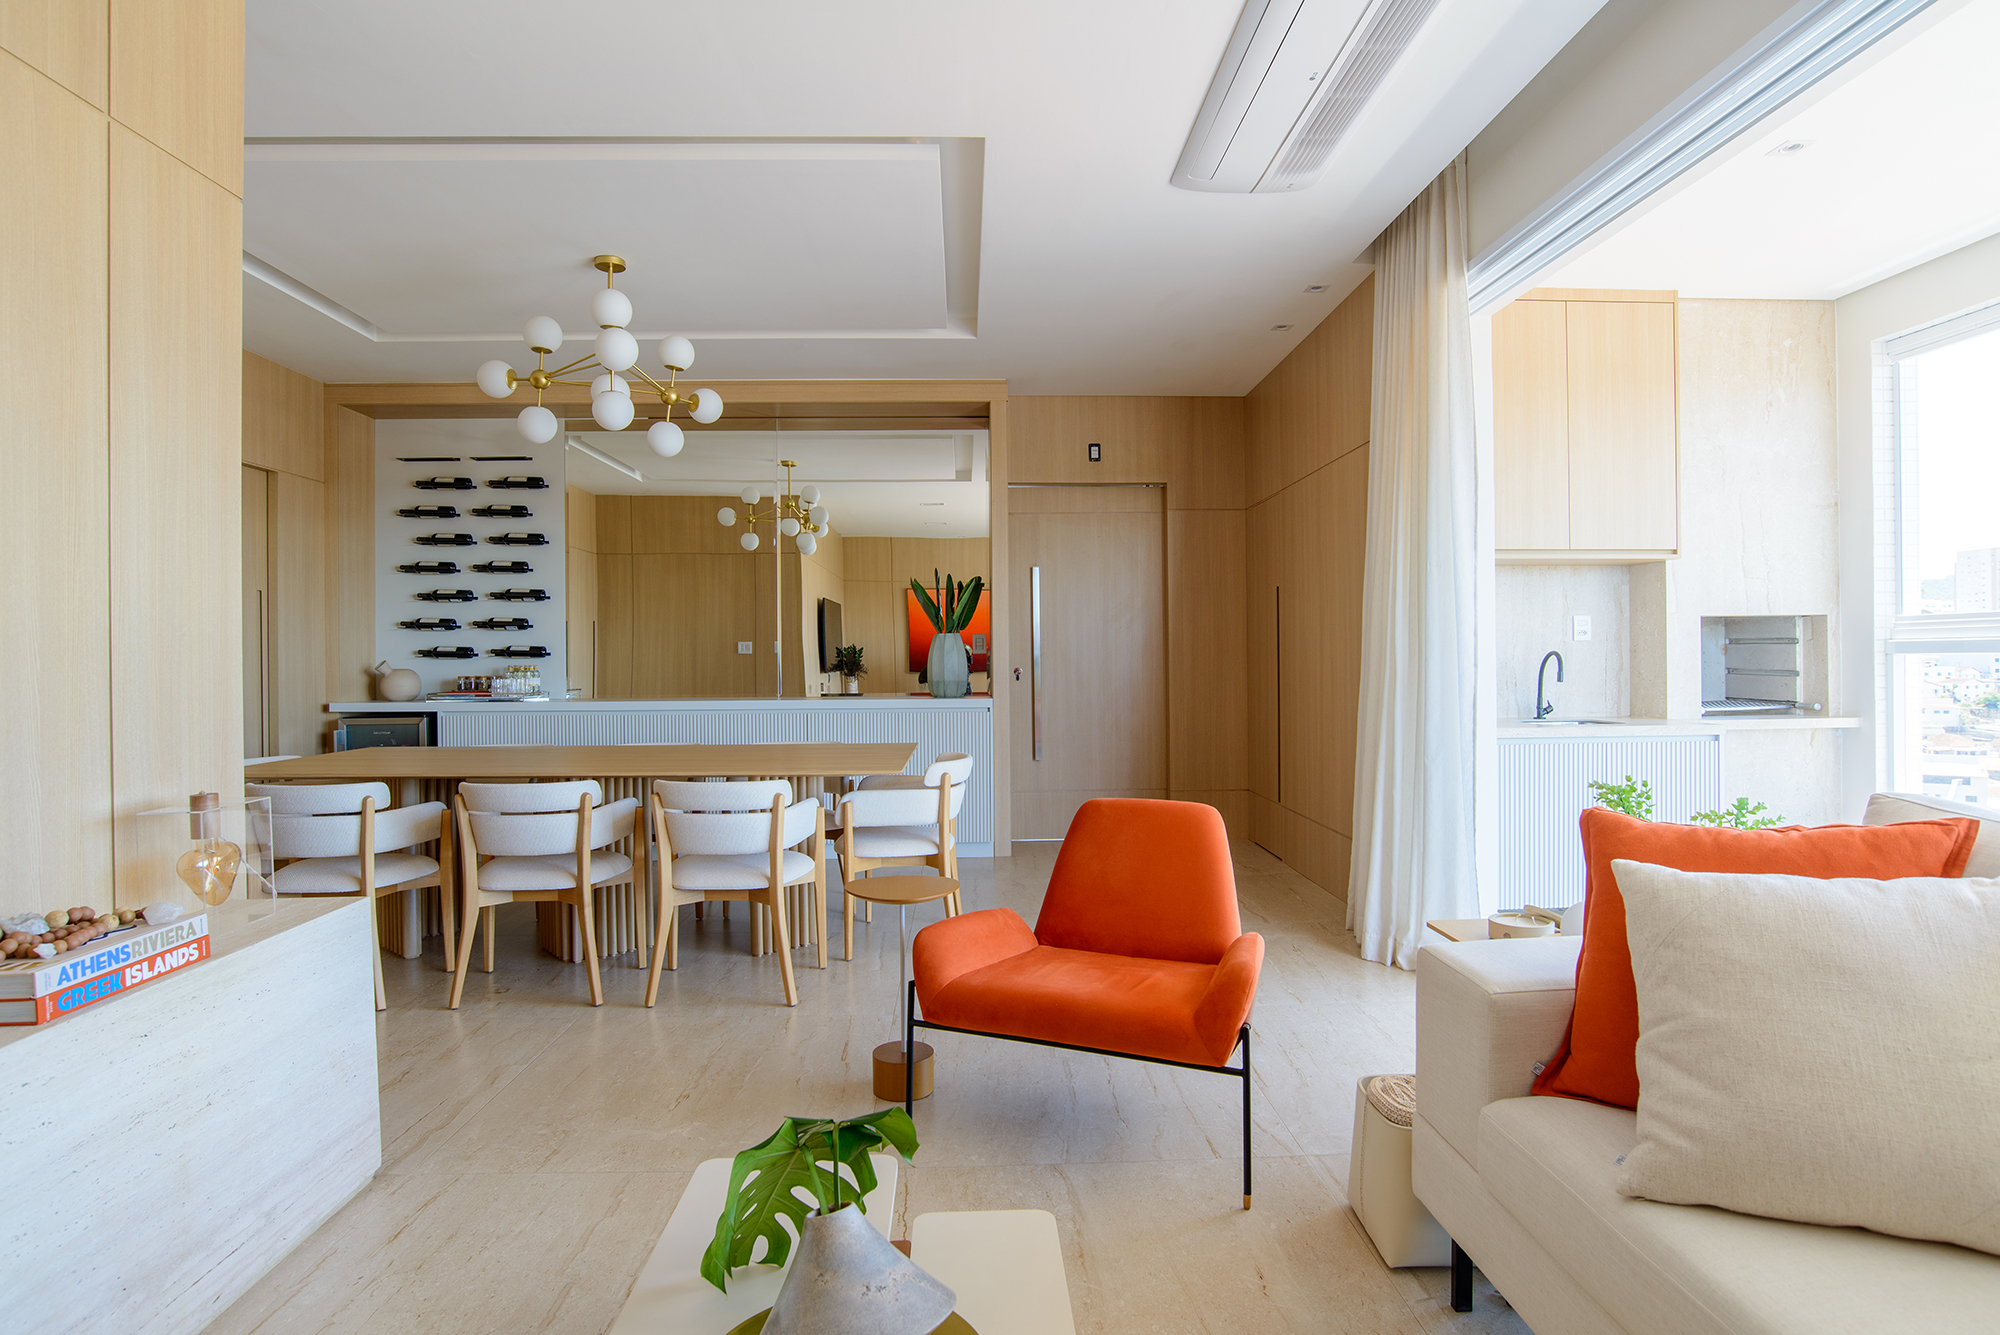 Paredes de madeira e tons de laranja compõem o décor deste apê de 138 m². Projeto de Letícia Nannetti. Na foto, sala, varanda e jarntar integrados. Varanda com churrasqueira e adega.